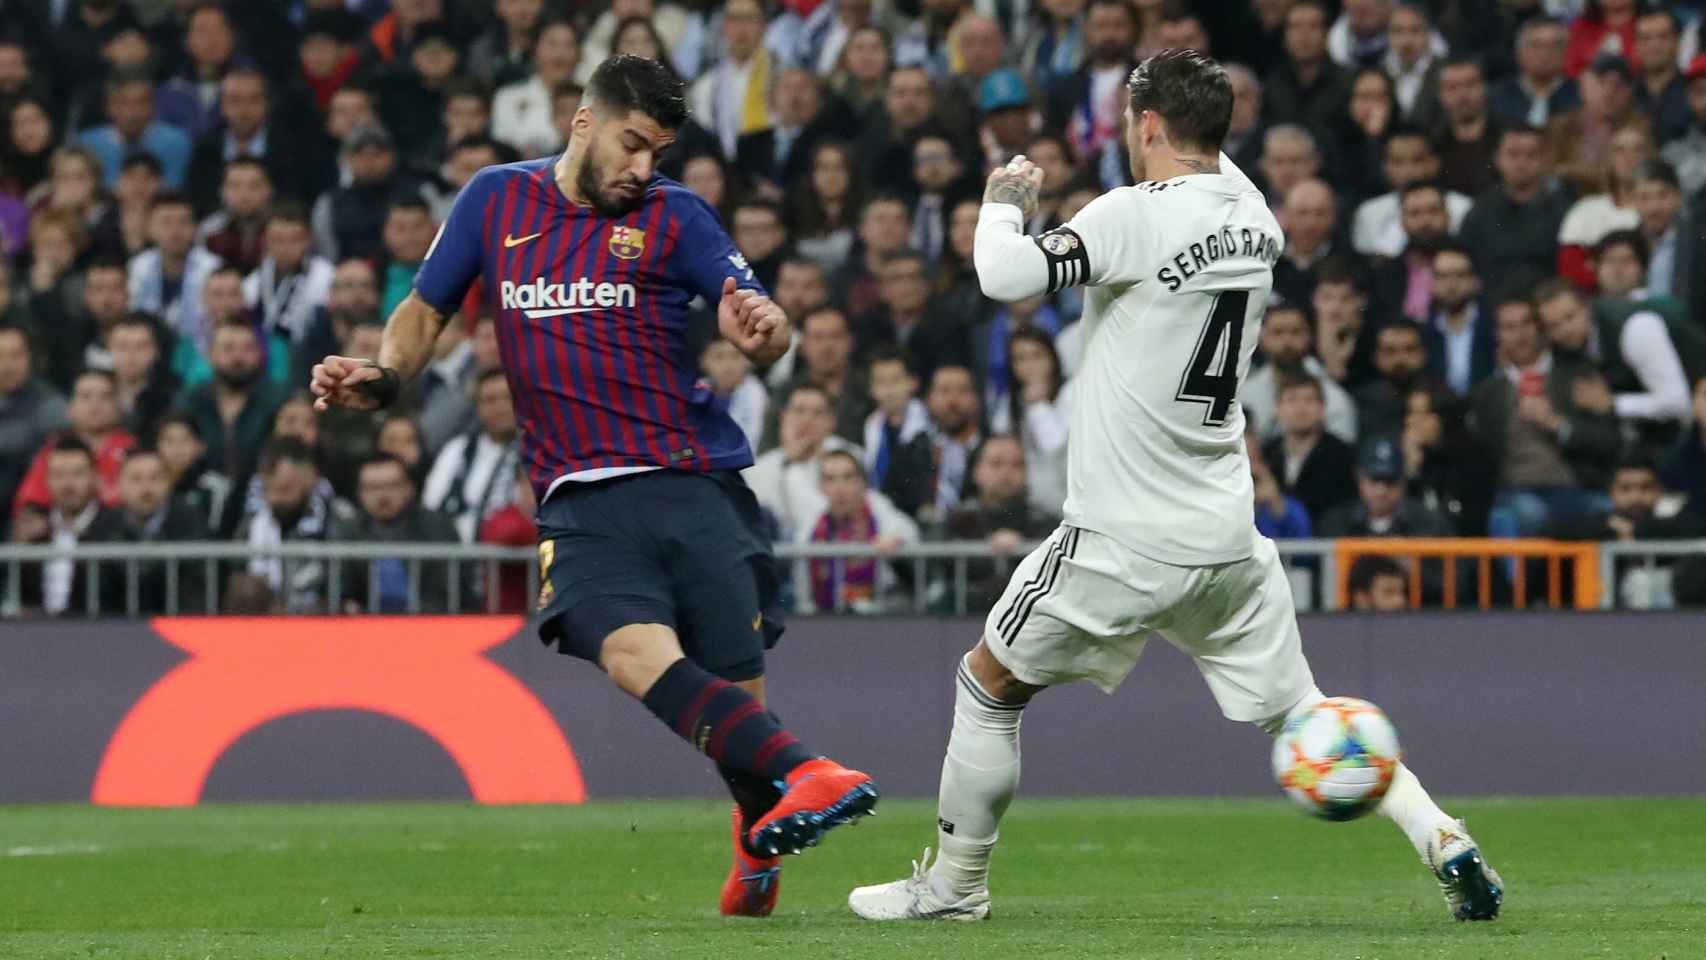 SuÃ¡rez dispara a porterÃ­a ante Ramos y marca el primer gol del FC Barcelona